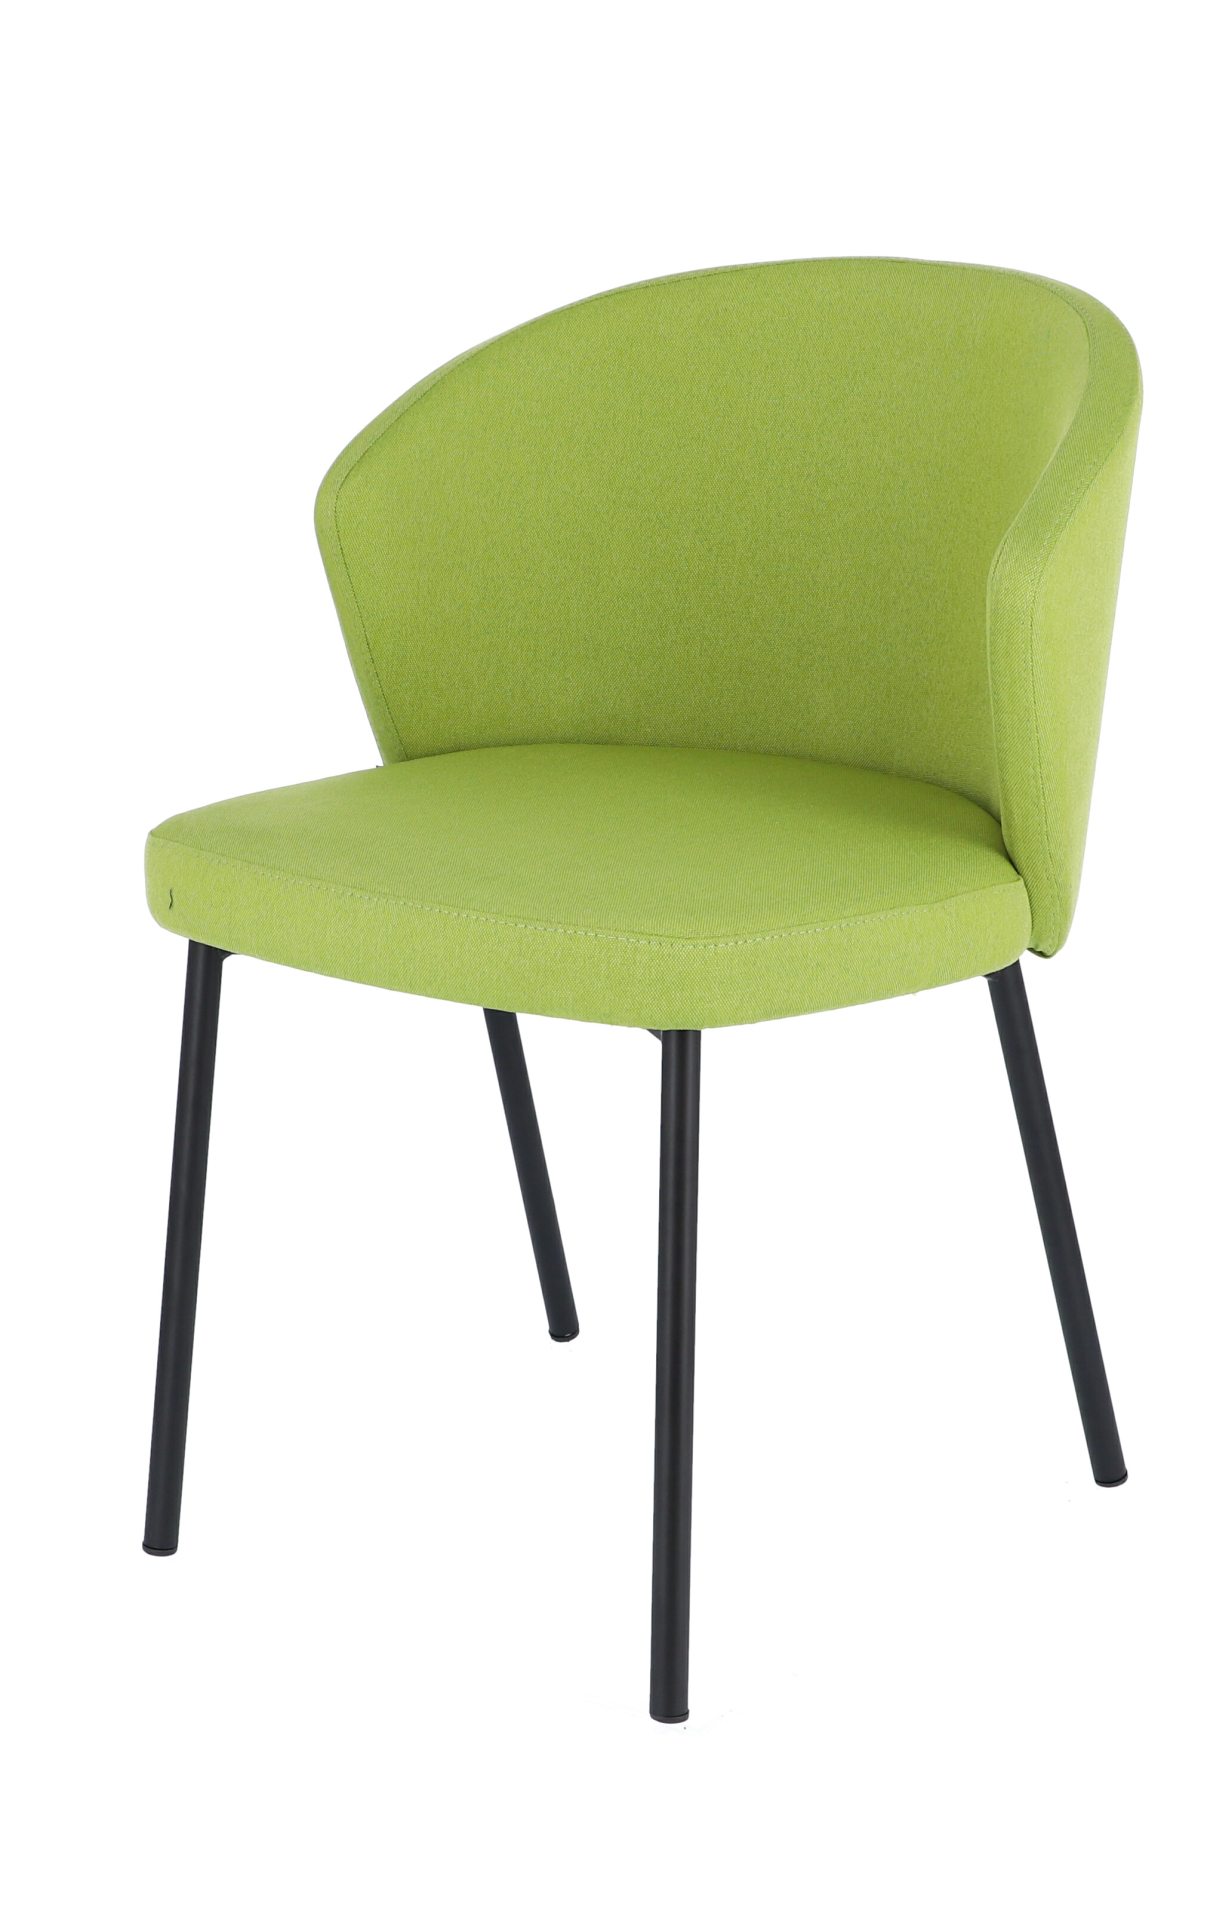 Der moderne Stuhl Mila wurde aus einem Metall Gestell hergestellt. Die Sitz- und Rückenfläche ist aus einem Stoff Bezug. Die Farbe des Stuhls ist Grün. Es ist ein Produkt der Marke Jan Kurtz.